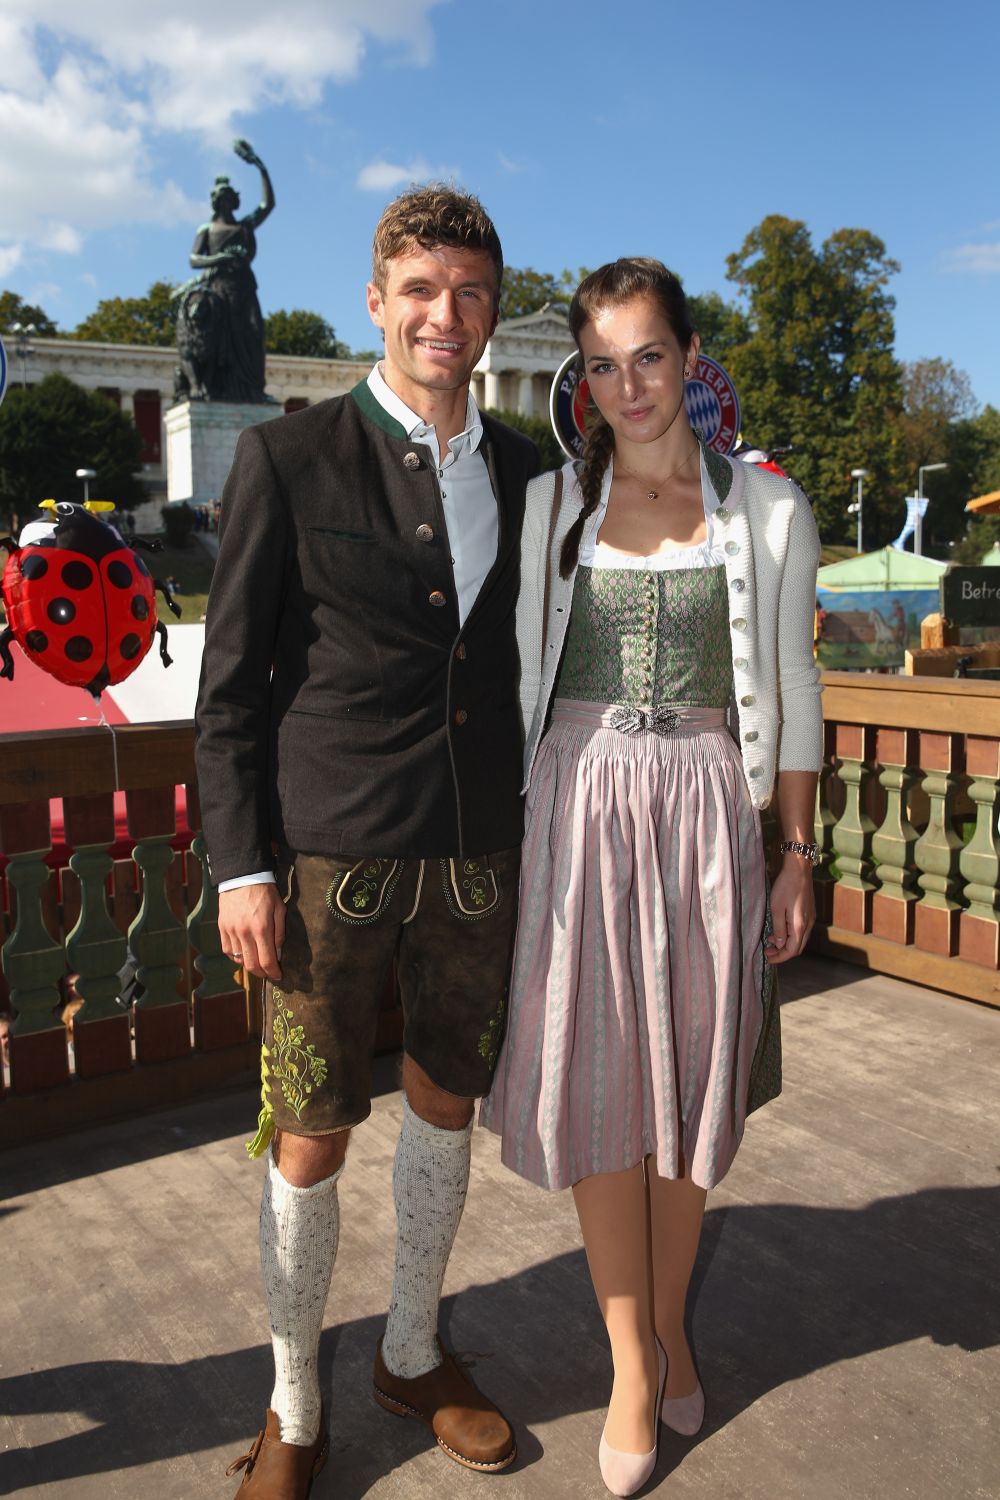 Imagini SENZATIONALE de la Oktoberfest! Cum au petrecut jucatorii lui Bayern in oras_9